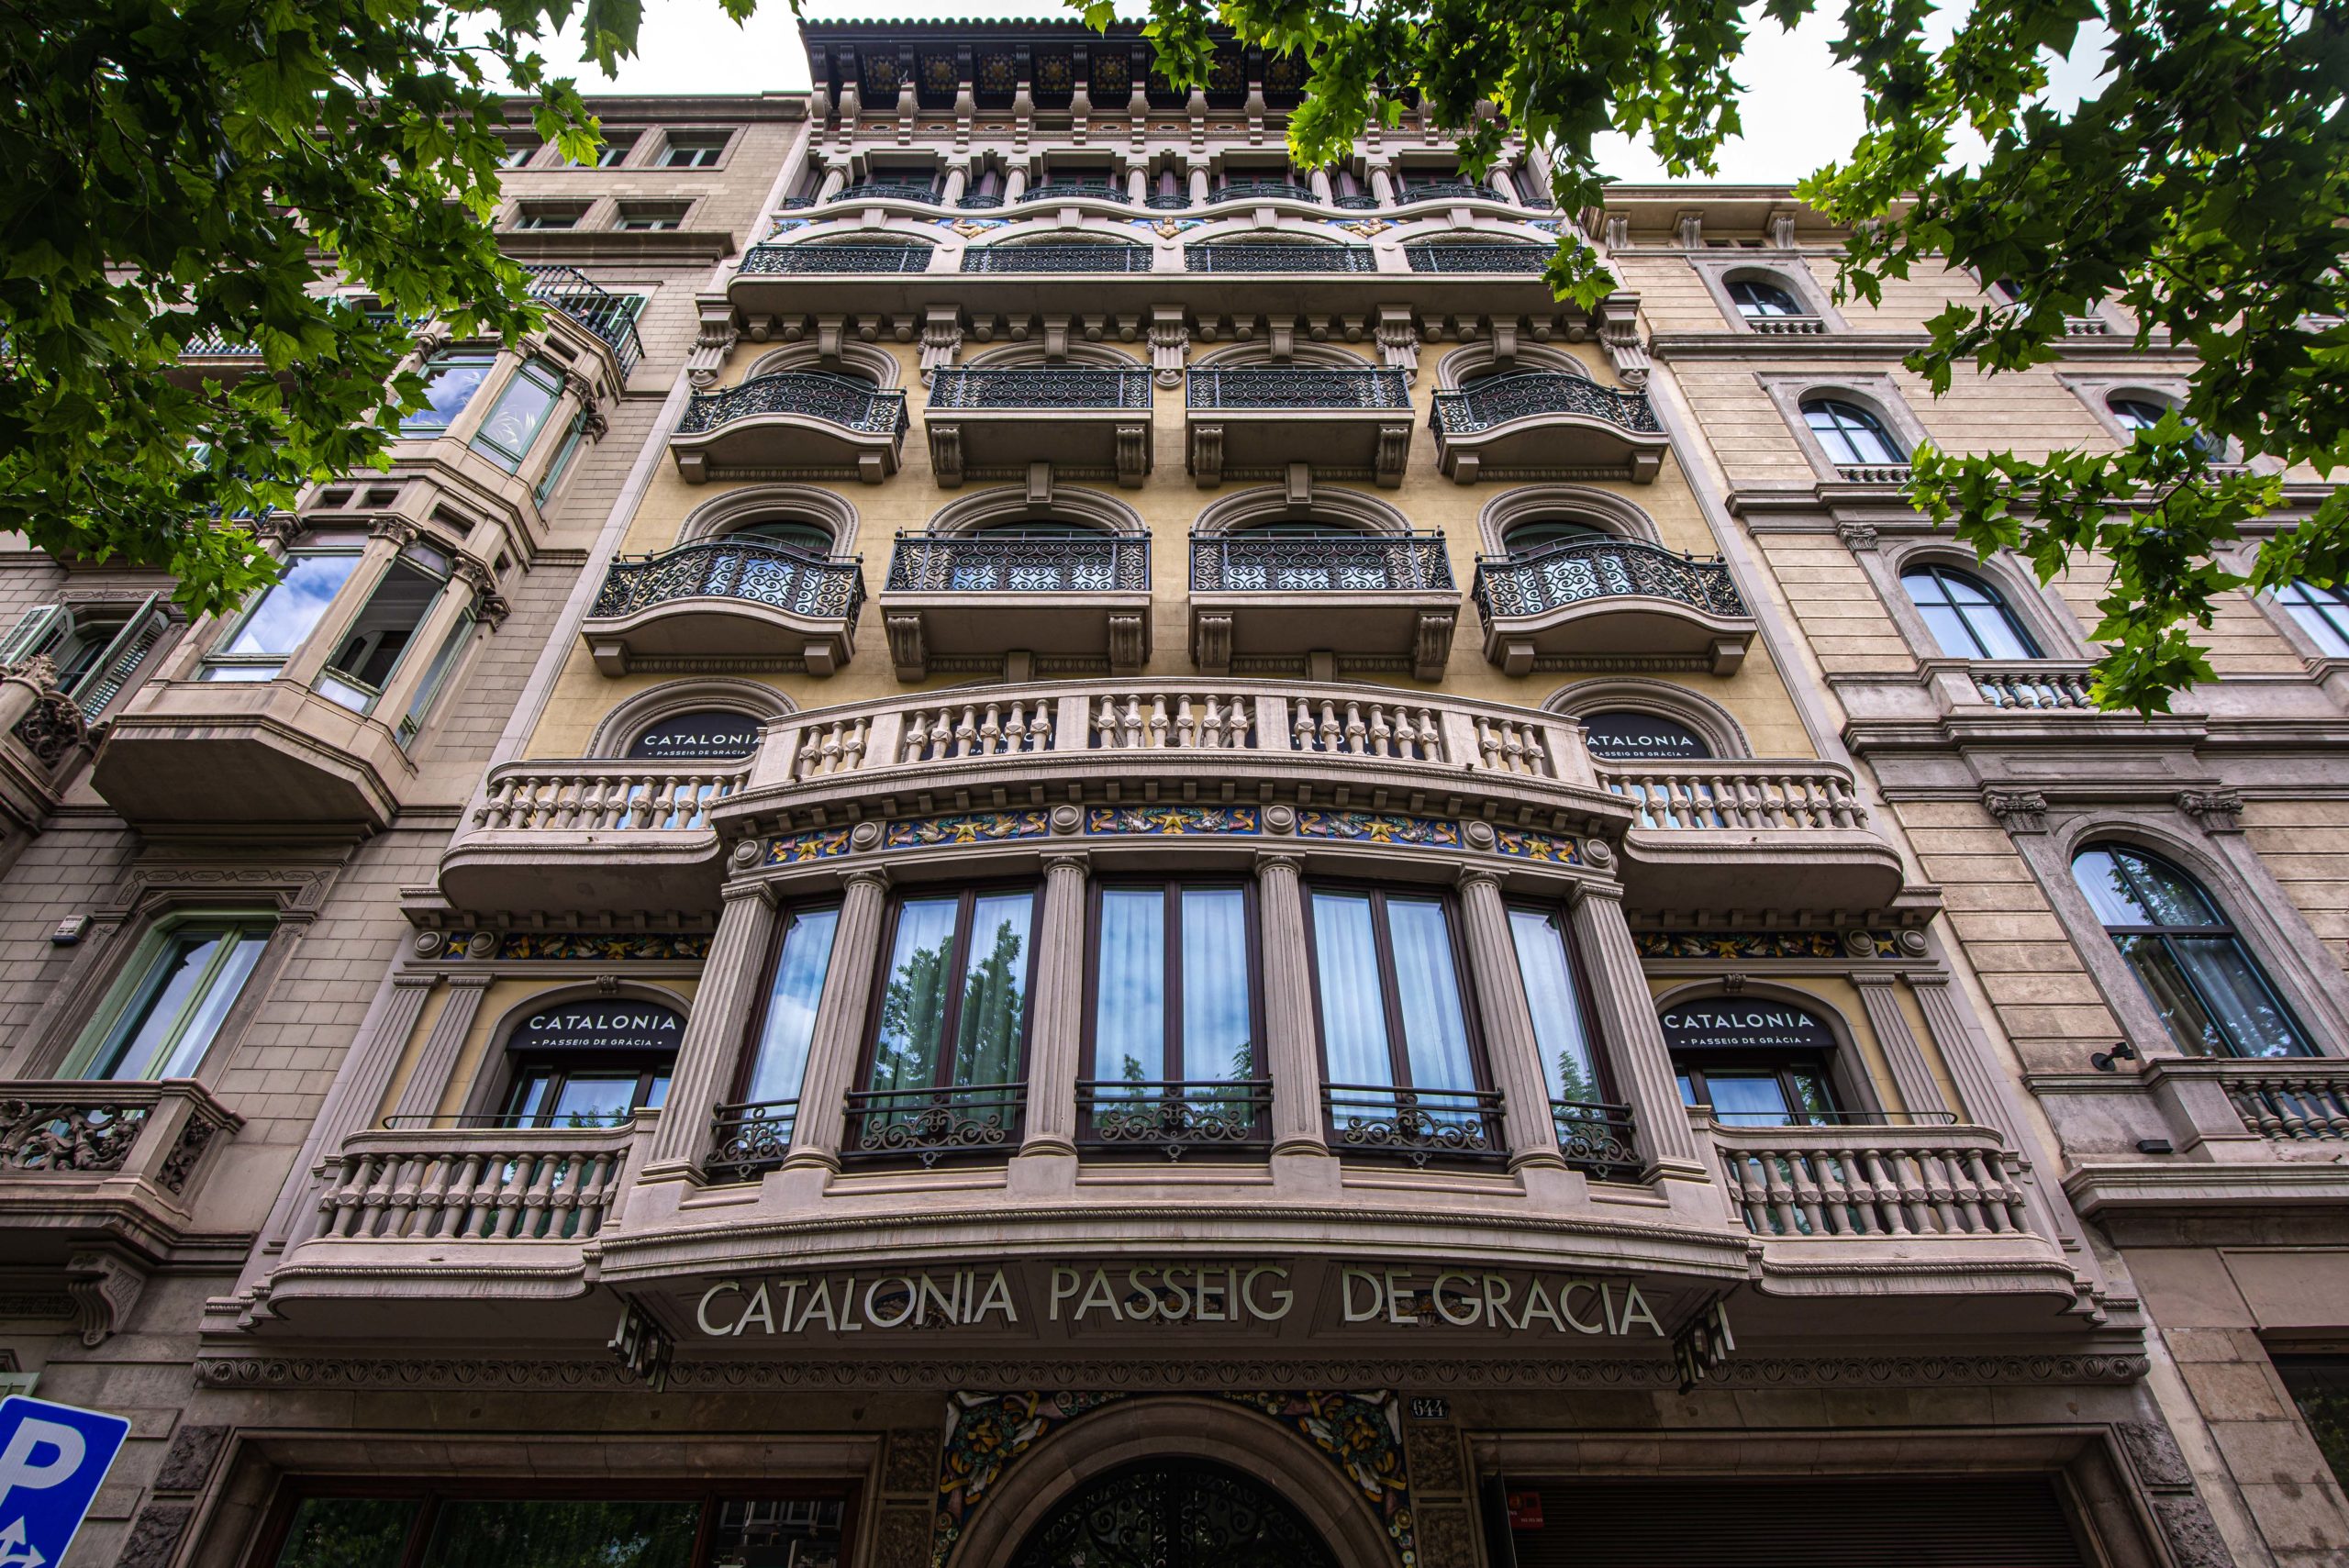 Photographie Architecturale Barlelone que faire à Barcelone Que faire en espagne Tutoriel Photo Tuto Photo blog voyage